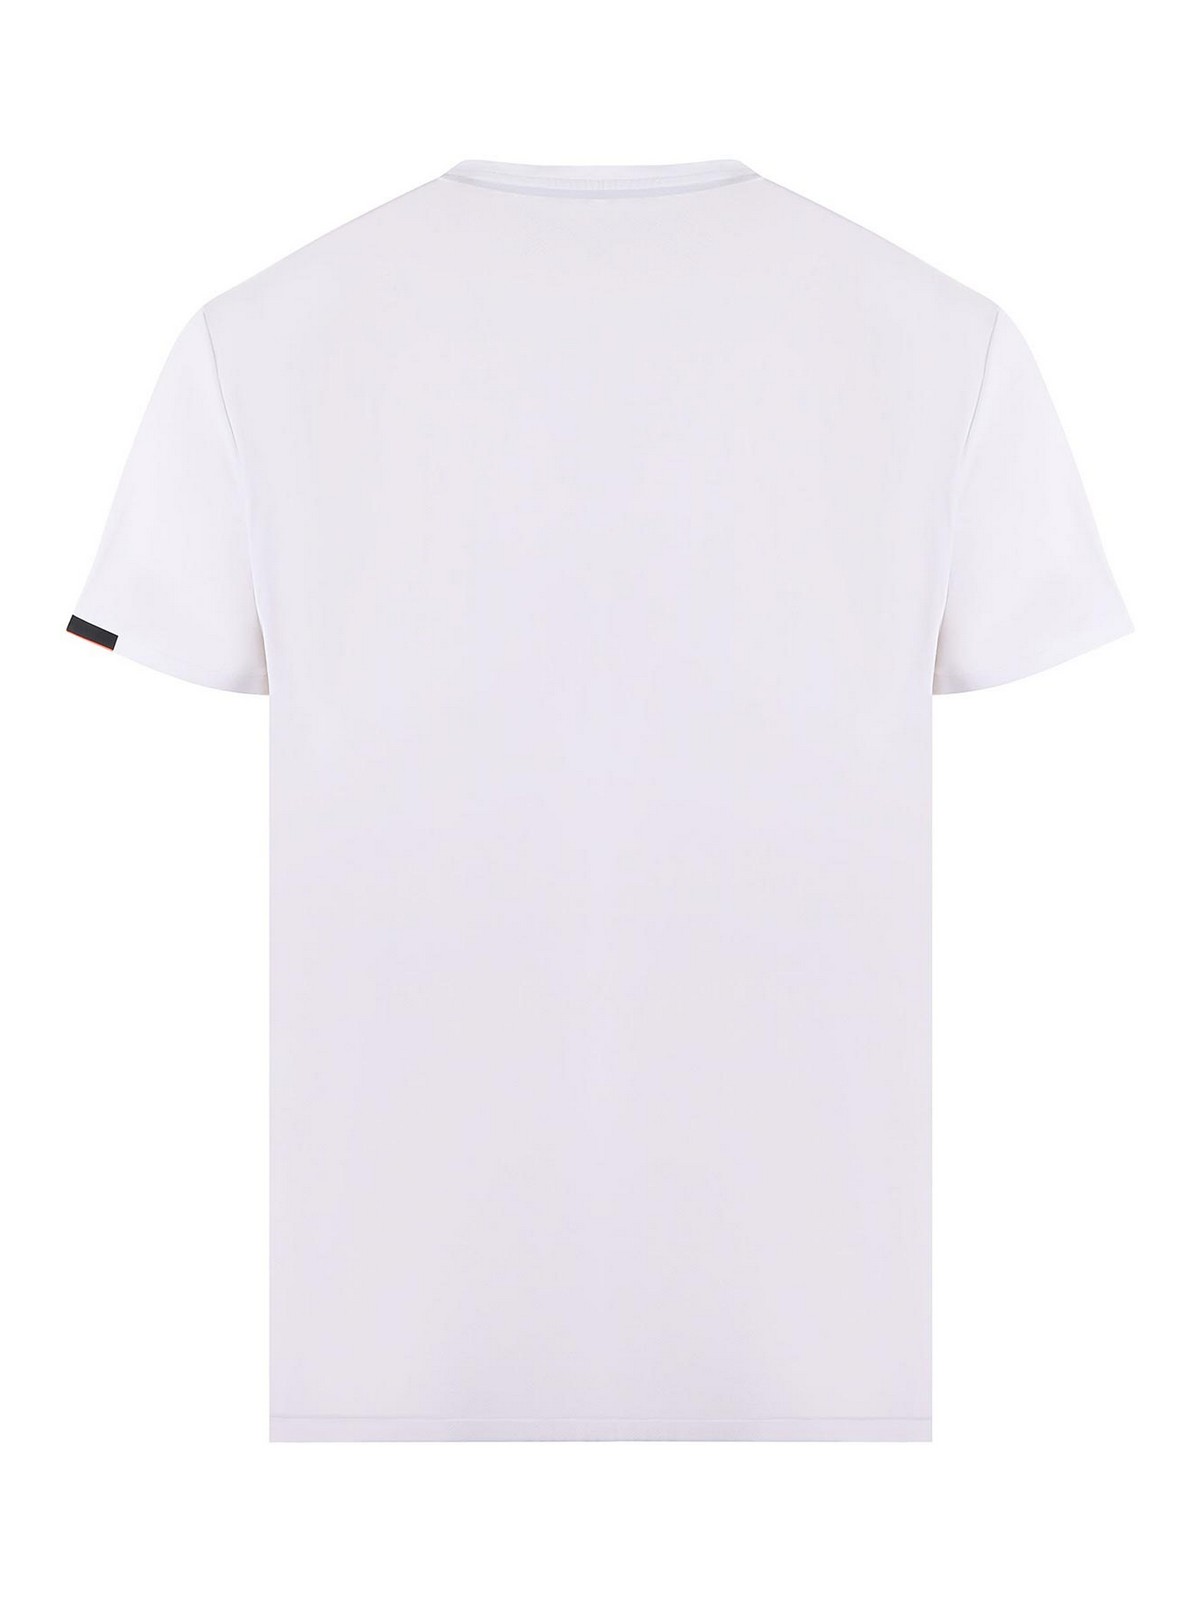 Shop Rrd Roberto Ricci Designs Camiseta - Blanco In White